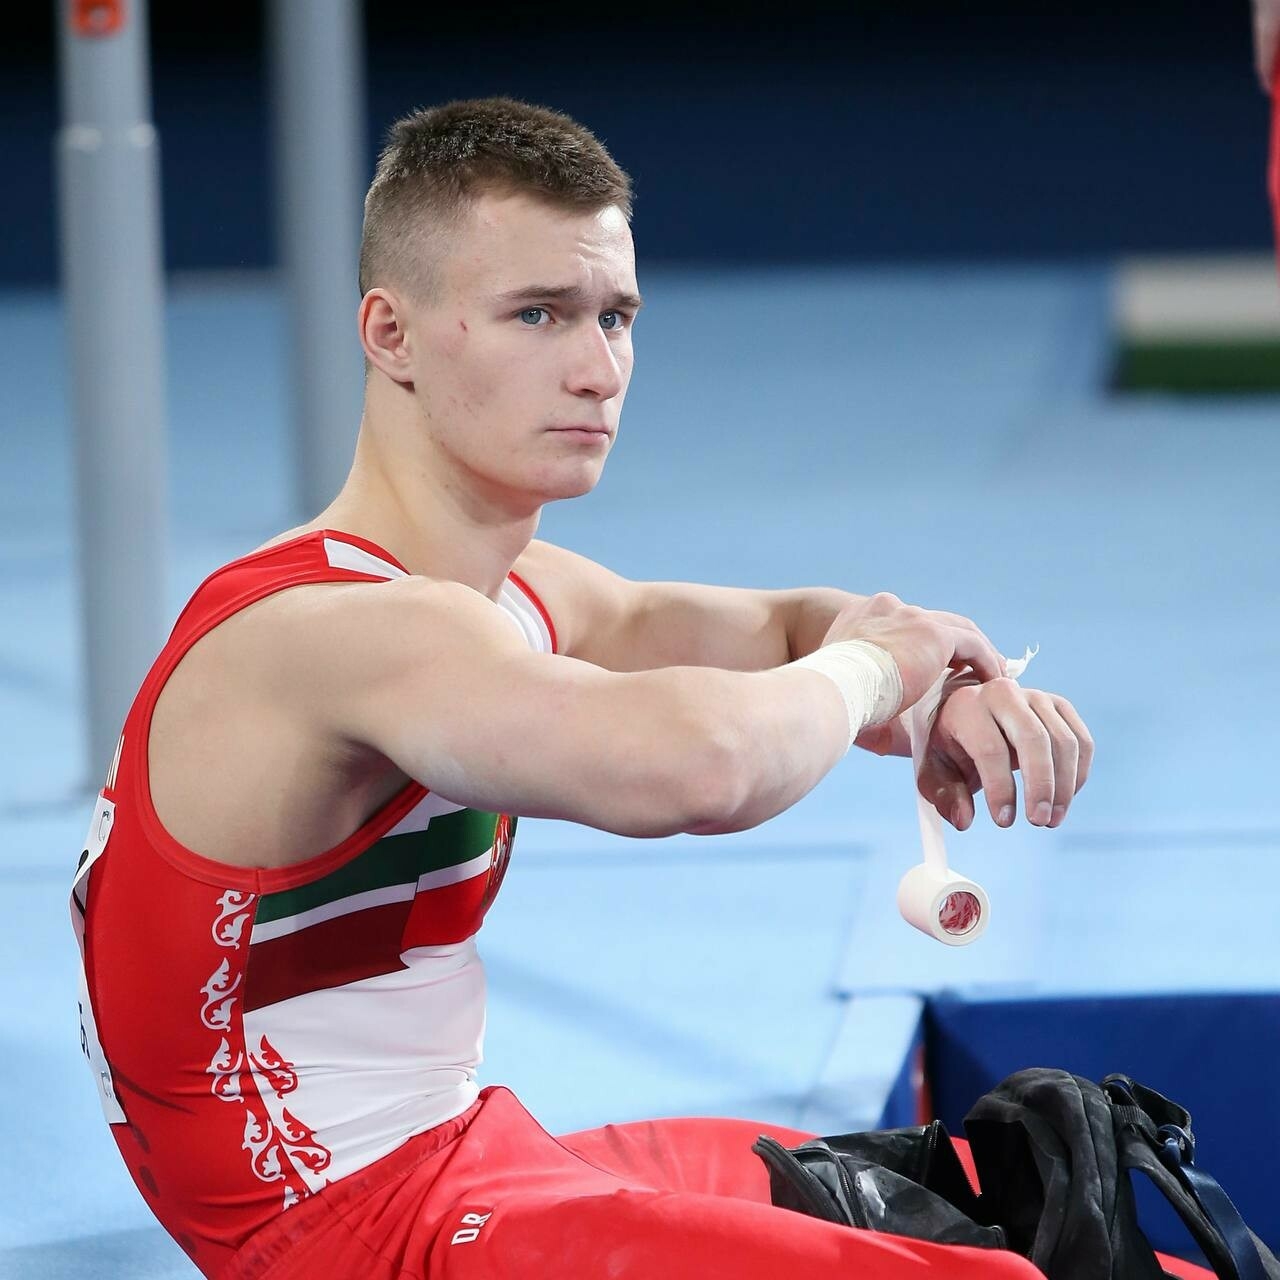 Титулы и две травмы ноги: как гимнаст из Казани Маринов стал абсолютным чемпионом России